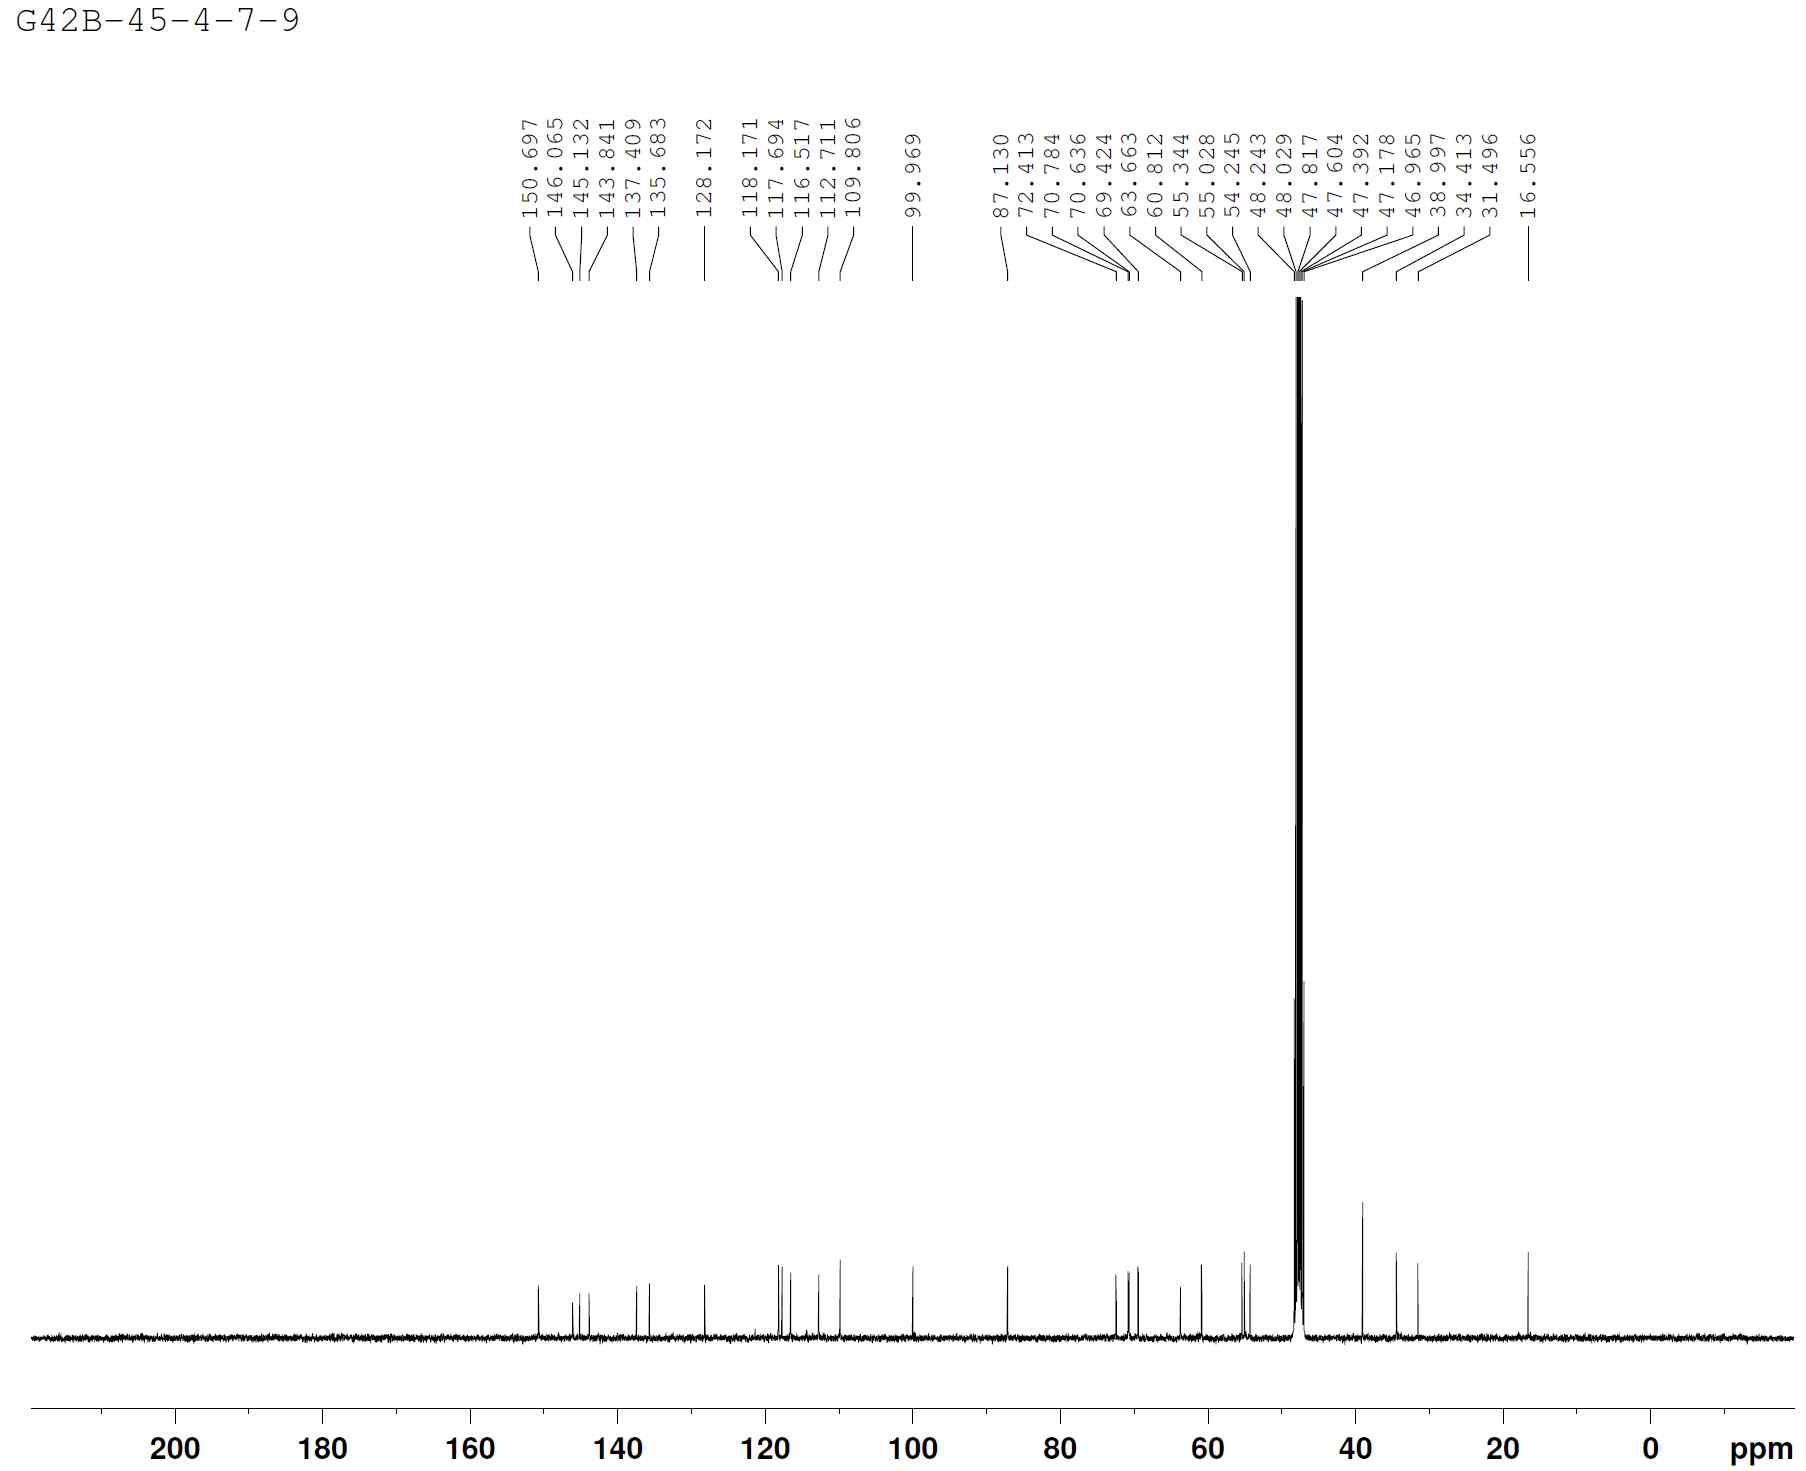 1H-NMR spectrum of compound 2